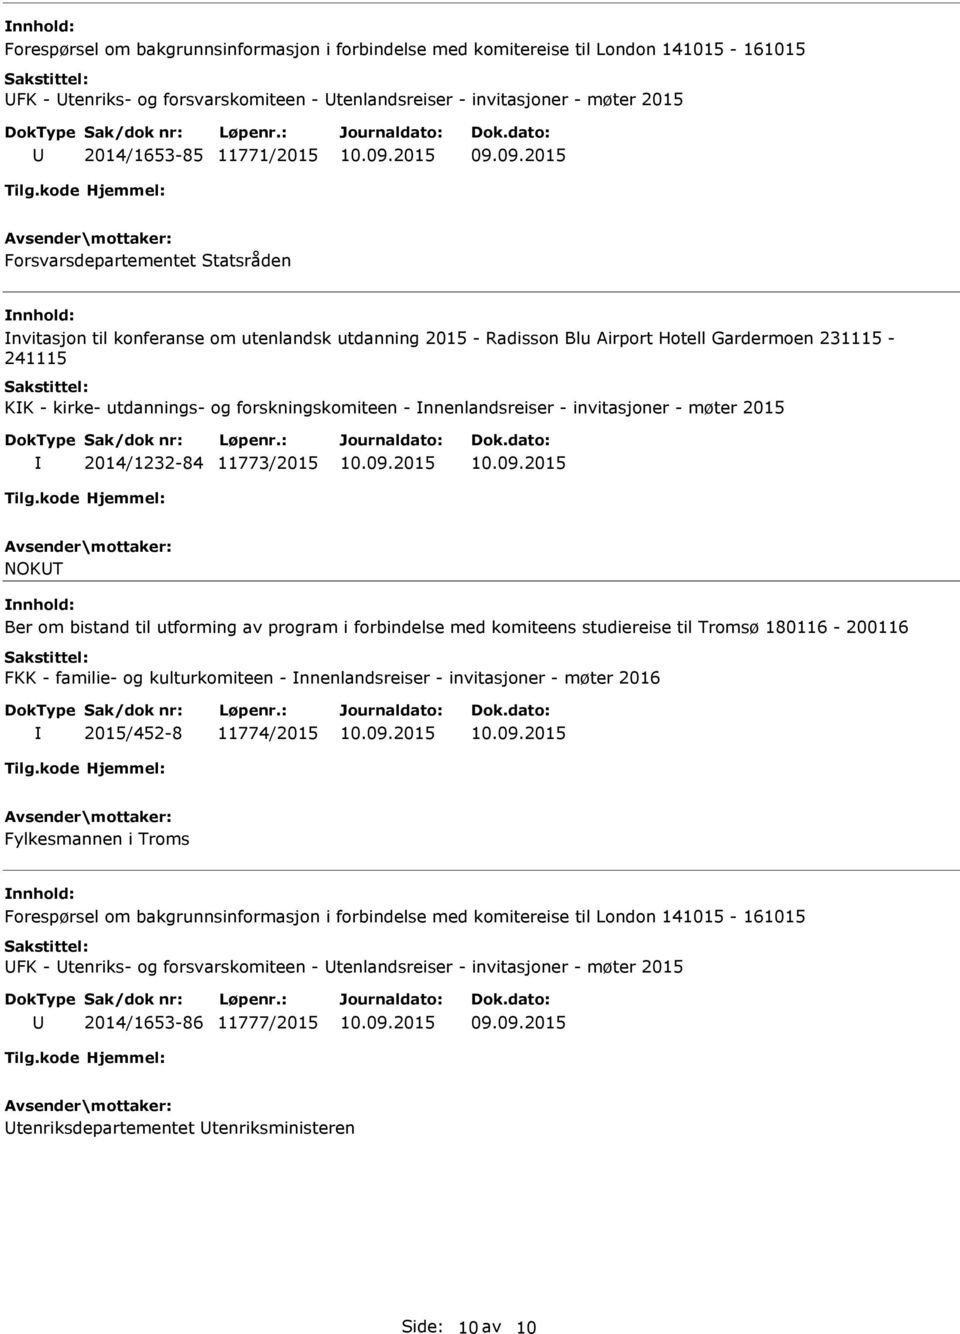 nnenlandsreiser - invitasjoner - møter 2015 2014/1232-84 11773/2015 NOKT Ber om bistand til utforming av program i forbindelse med komiteens studiereise til Tromsø 180116-200116 FKK - familie- og